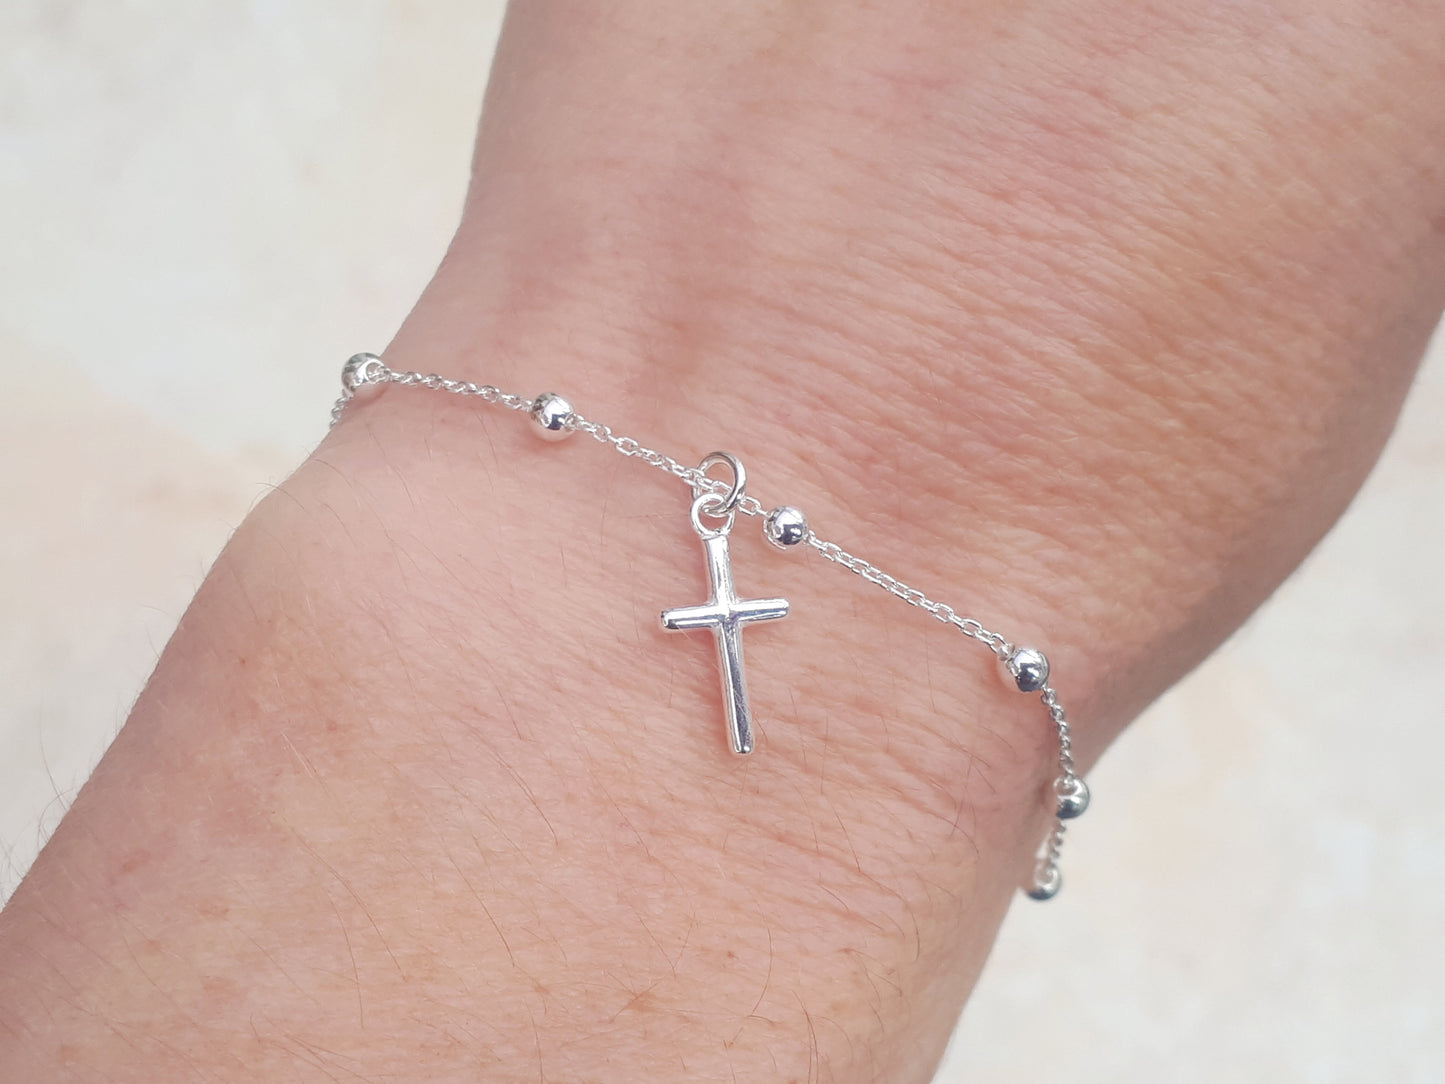 Sterling silver adjustable cross bracelet.